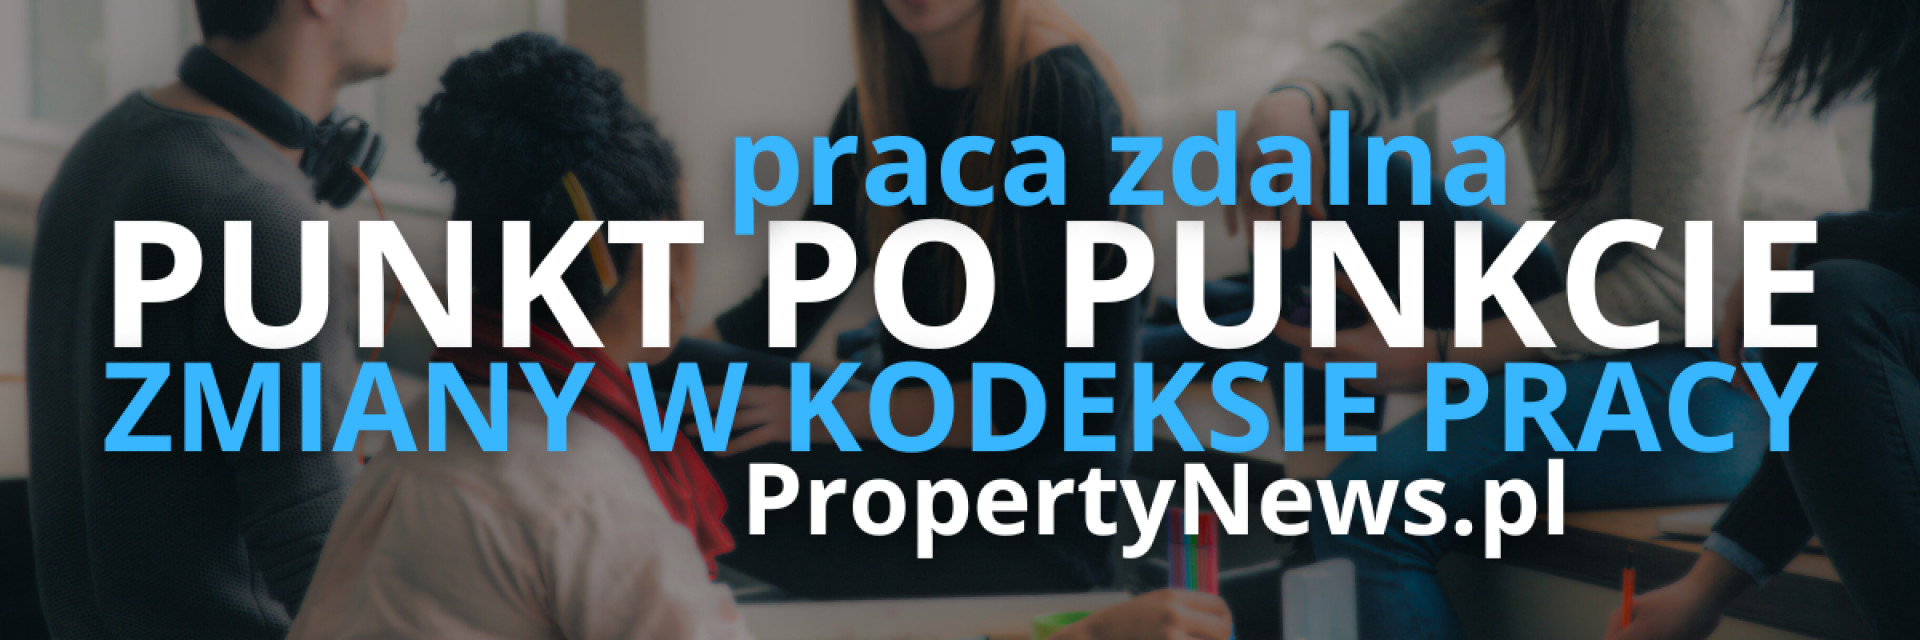 PropertyNews.pl - W BIURZE CZY ZDALNIE.png